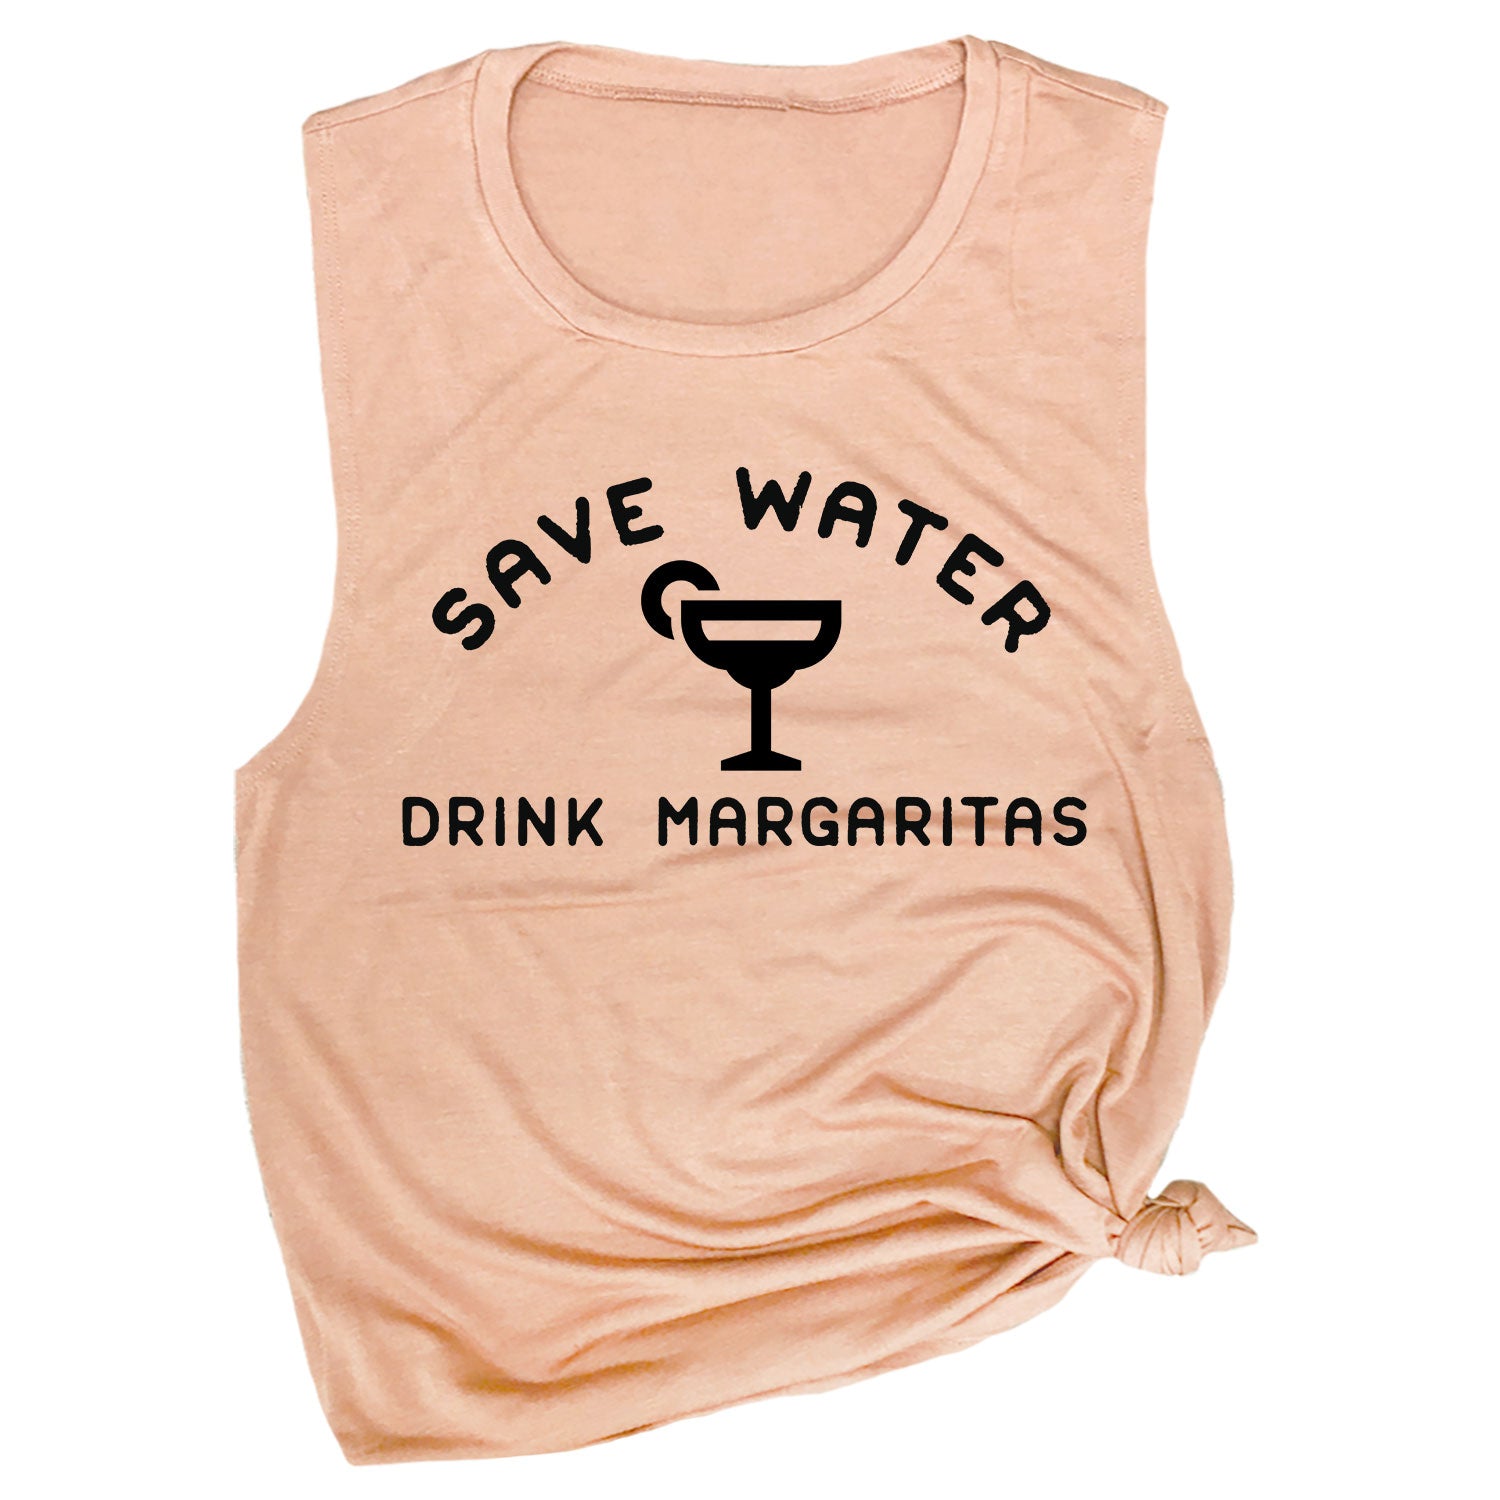 Save Water Drink Margaritas Muscle Tee